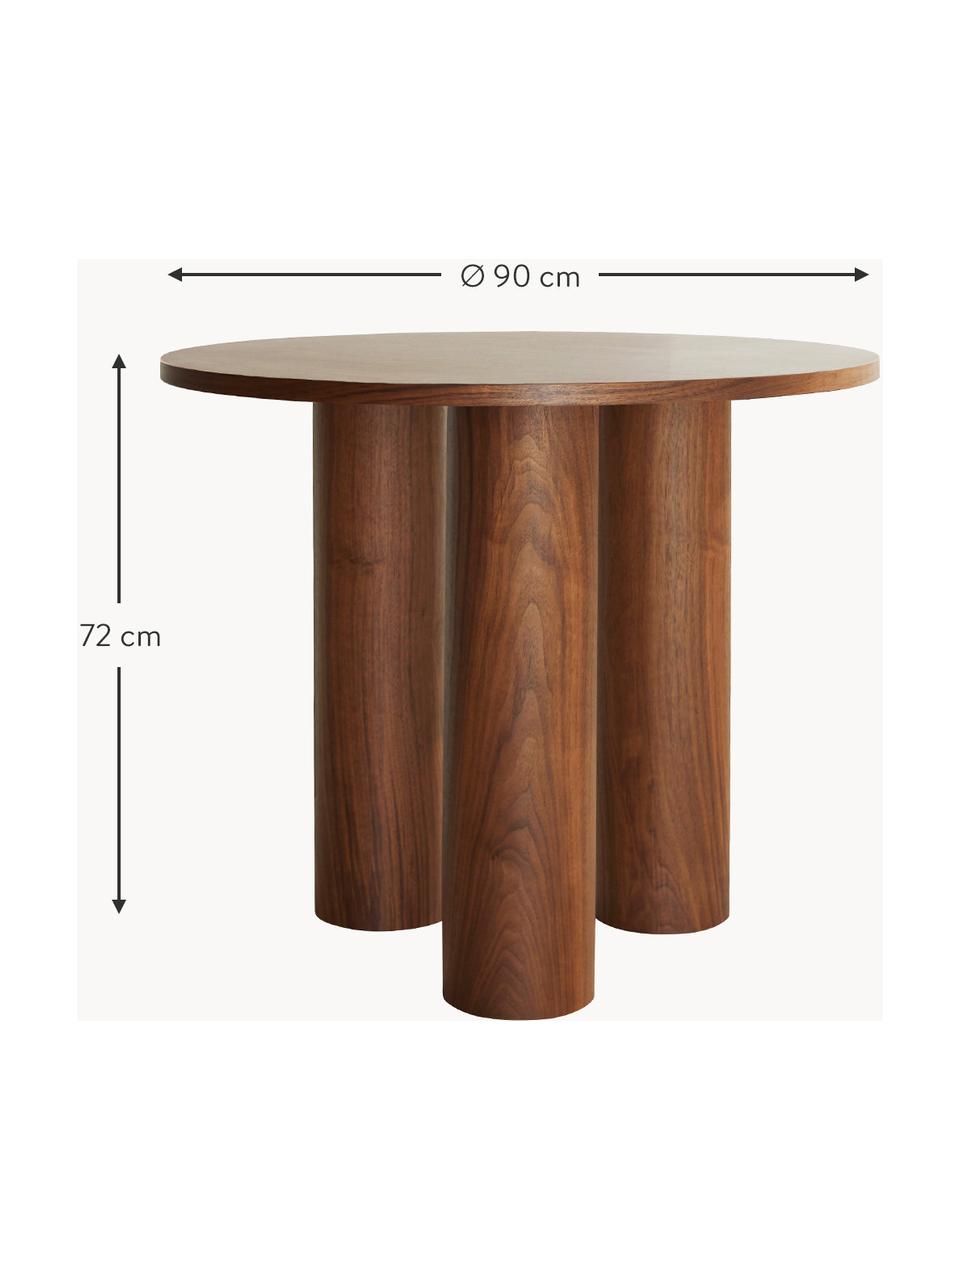 Runder Tisch Colette, Ø 90 cm, Mitteldichte Holzfaserplatte (MDF), mit Walnussholzfurnier

Dieses Produkt wird aus nachhaltig gewonnenem, FSC®-zertifiziertem Holz gefertigt., Walnussholz, Ø 90 cm